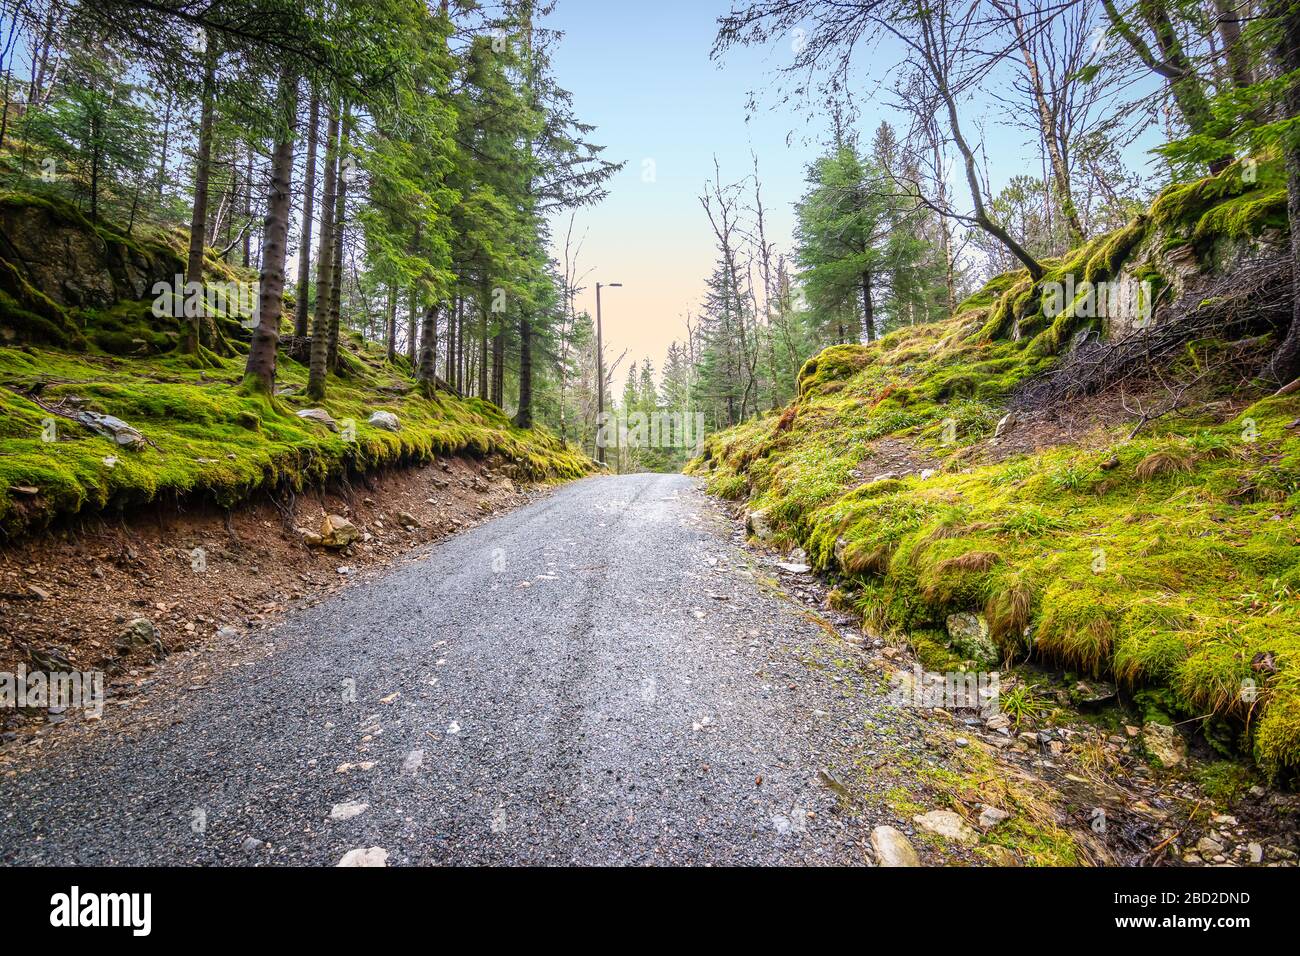 Strada nella pineta in Norvegia. Splendido paesaggio di boschi scandinavi. Foto Stock